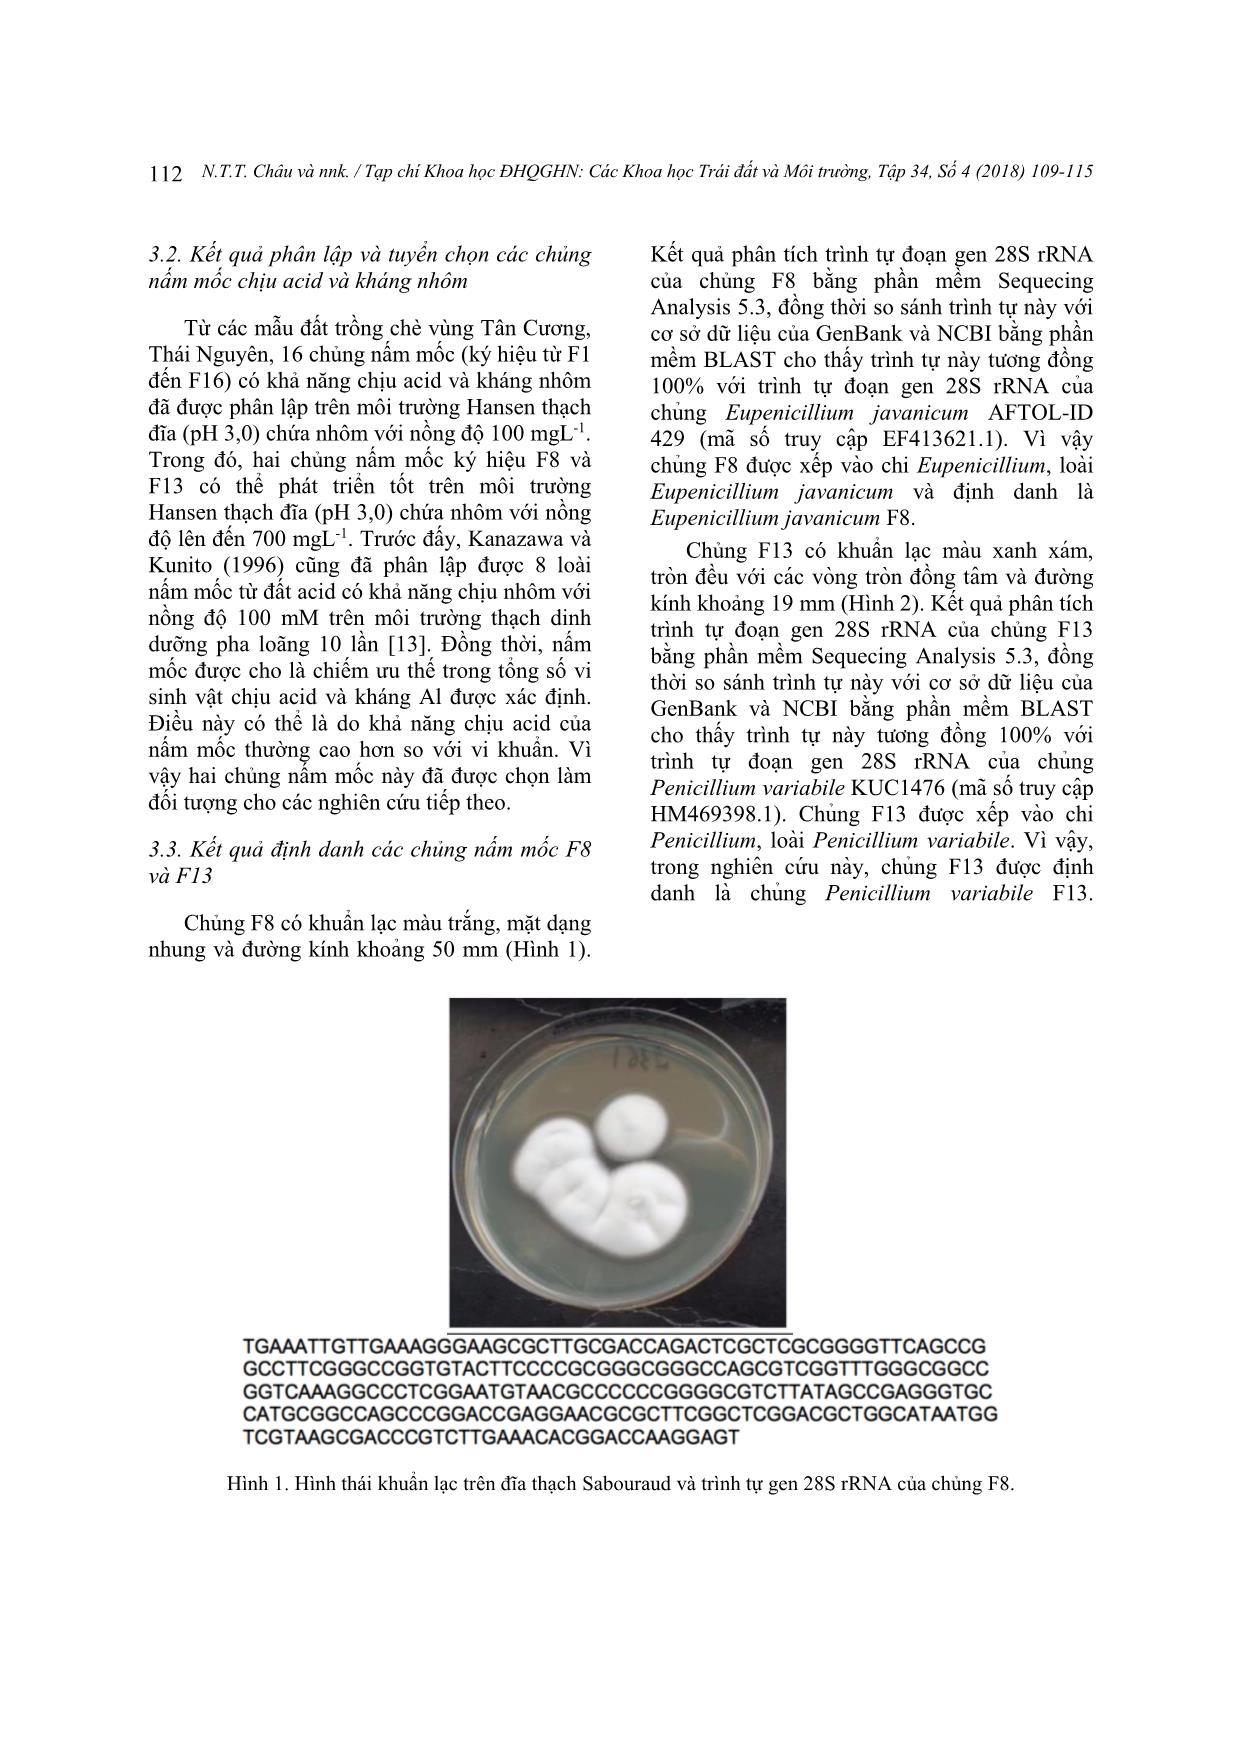 Khả năng chịu acid, kháng và hấp thụ nhôm của nấm mốc phân lập từ đất trồng chè vùng Tân Cương, Thái Nguyên trang 4